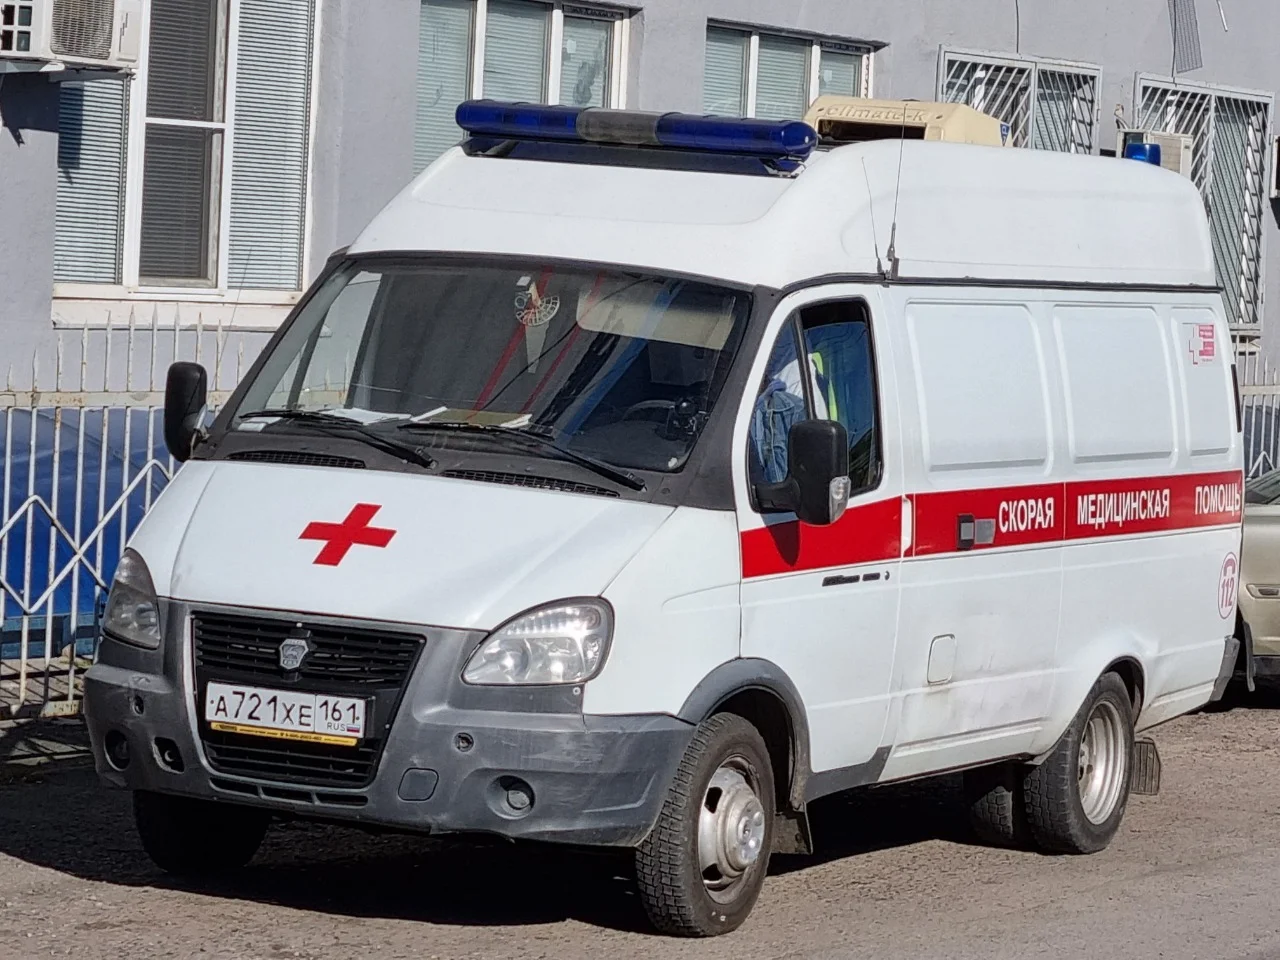 11 школьников госпитализированы в Ростовской области из-за острой кишечной инфекции